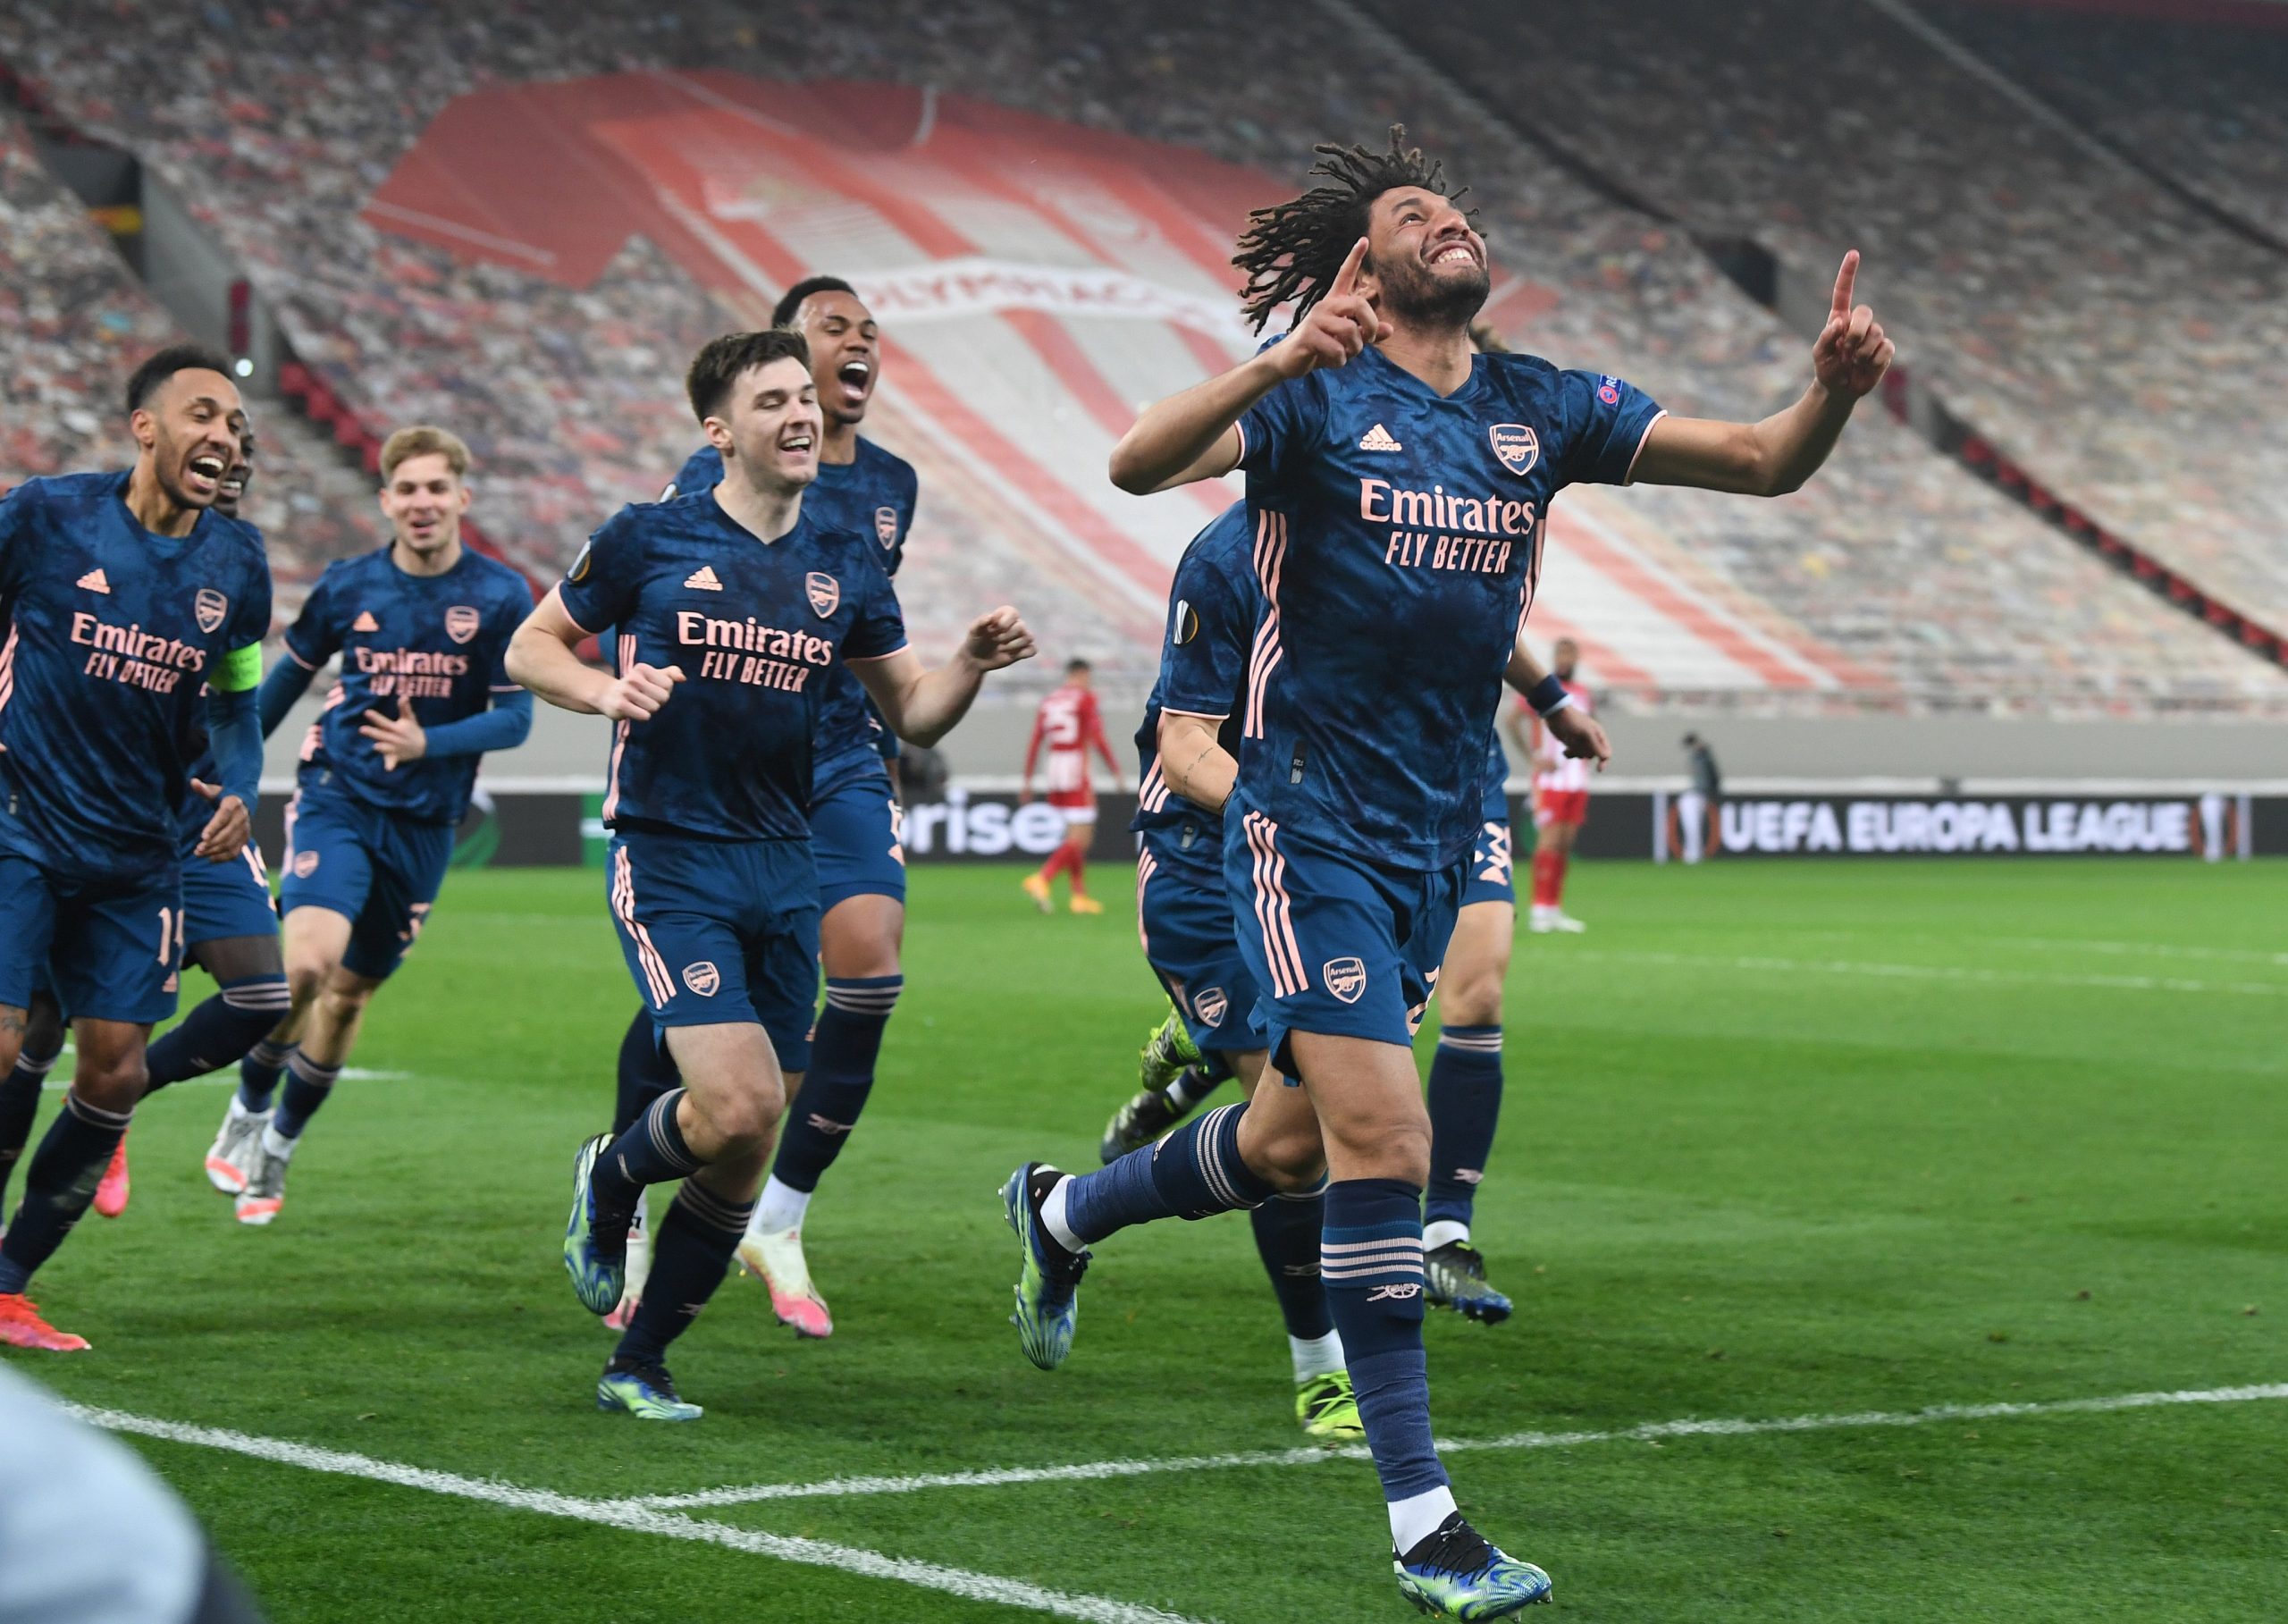 Olympiakos – Arsenal (1-3) : les notes d’une victoire bien heureuse